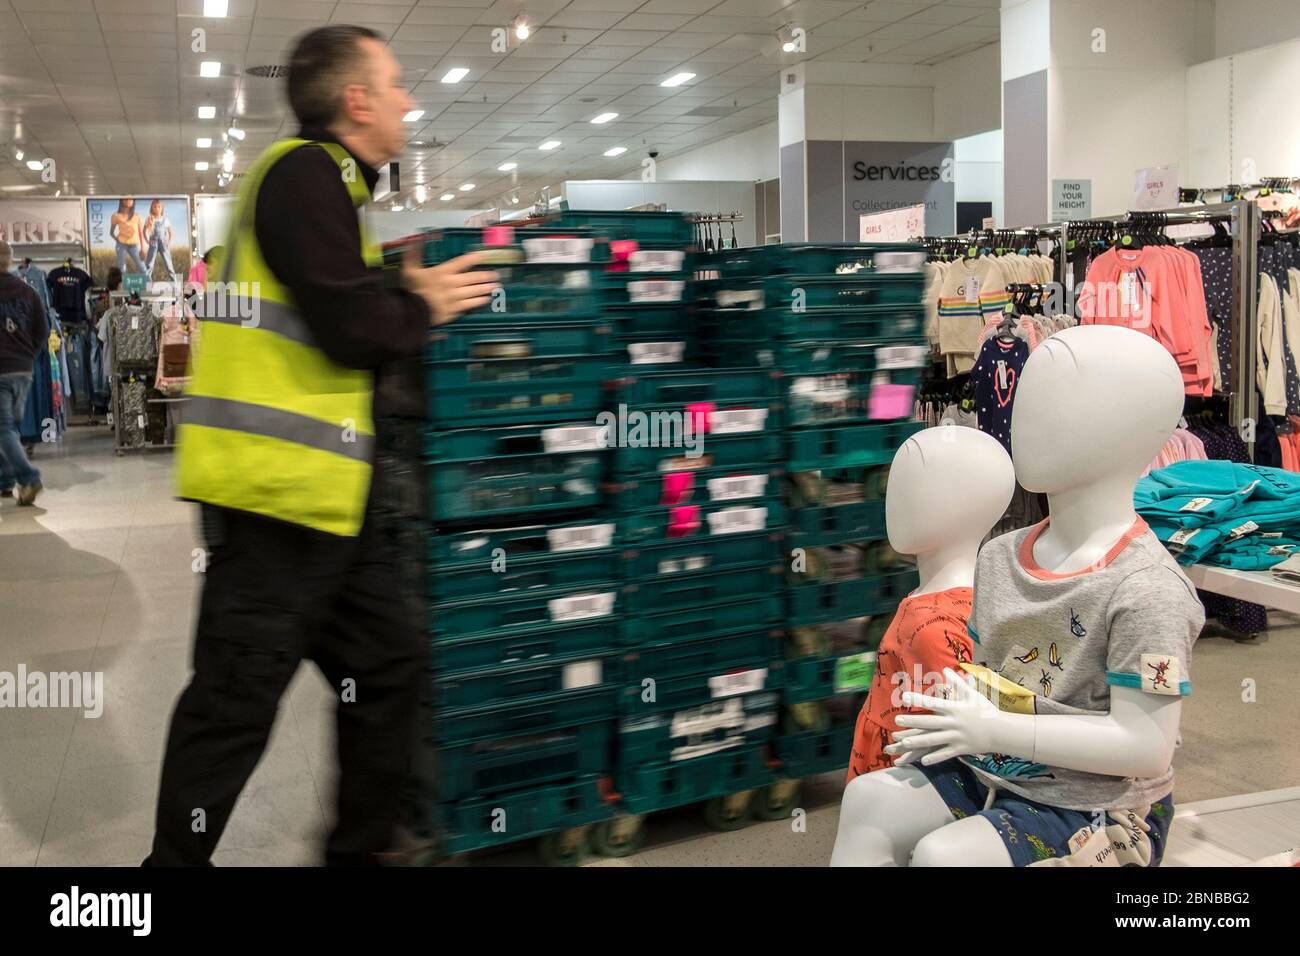 Un membre du personnel qui pousse des plateaux en plastique de marchandises devant des mannequins dans un magasin Marks and Spencer, M&S, au centre de Truro City, dans Cornwall. Banque D'Images